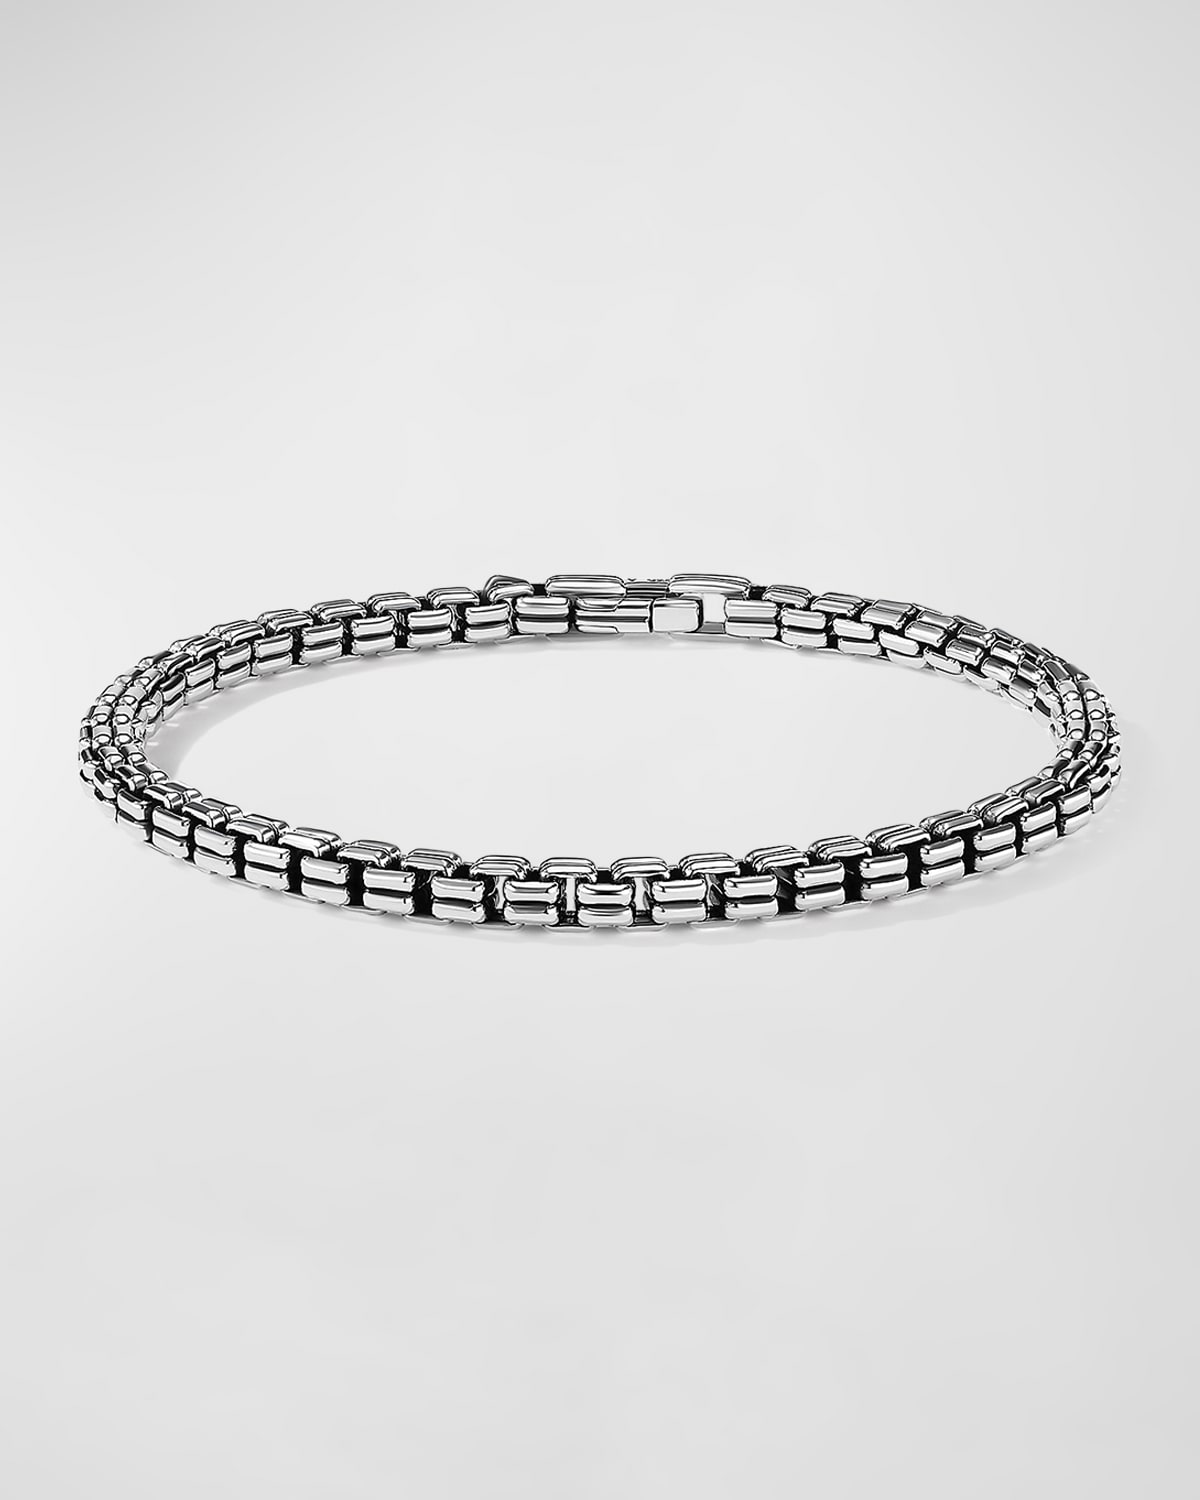 Men's Double Box Chain Bracelet in Silver, 4mm, Size L